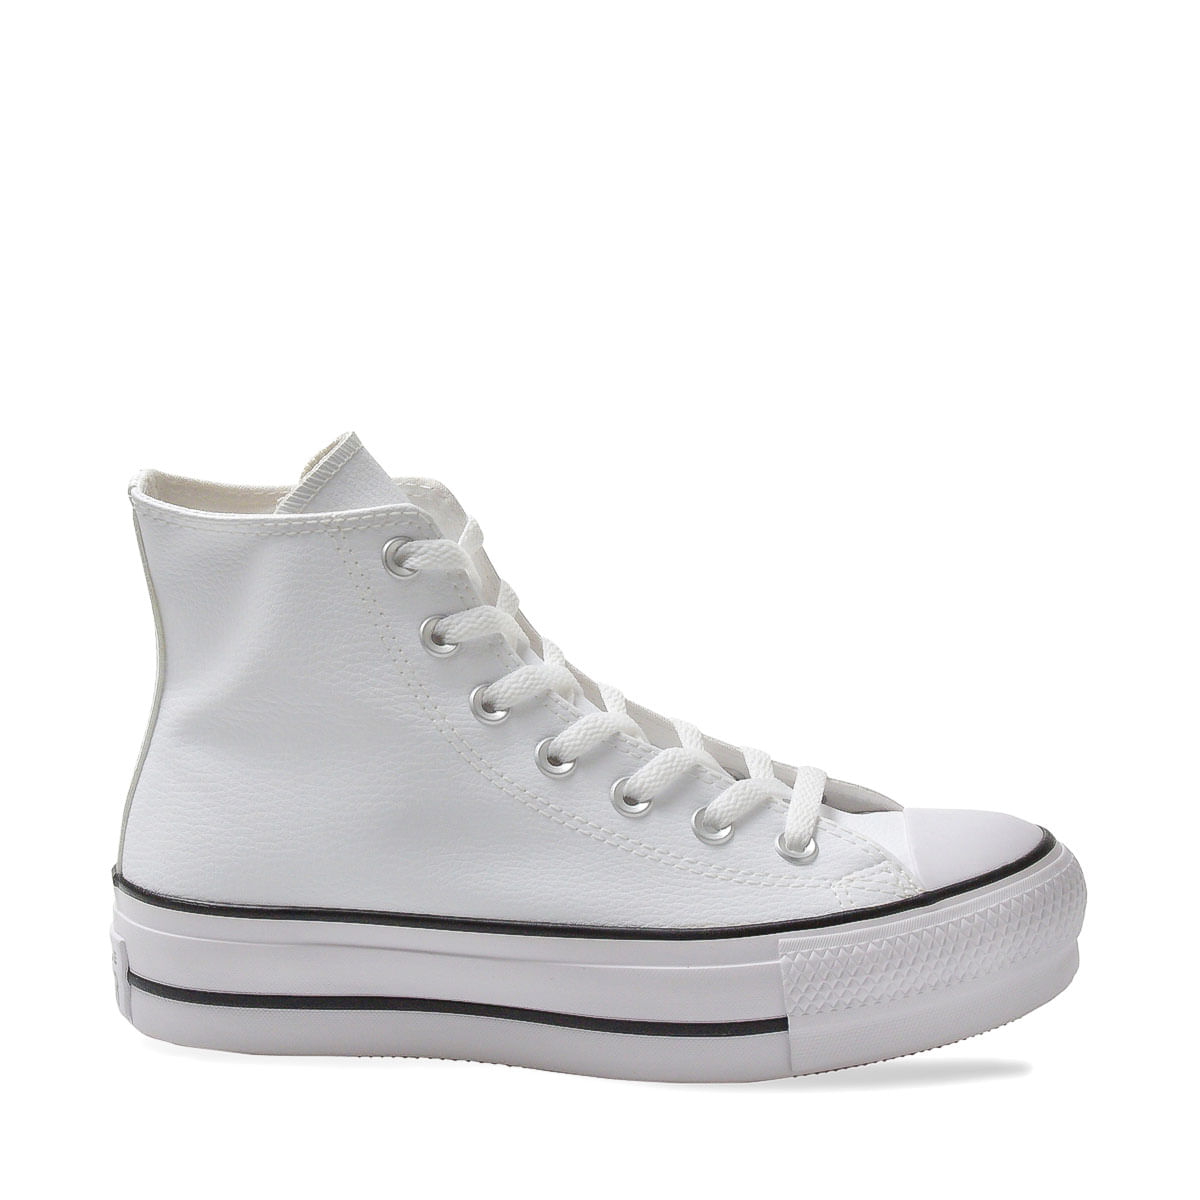 All Star Branco Cano Alto Feminino e Masculino - Kepucce Shoes